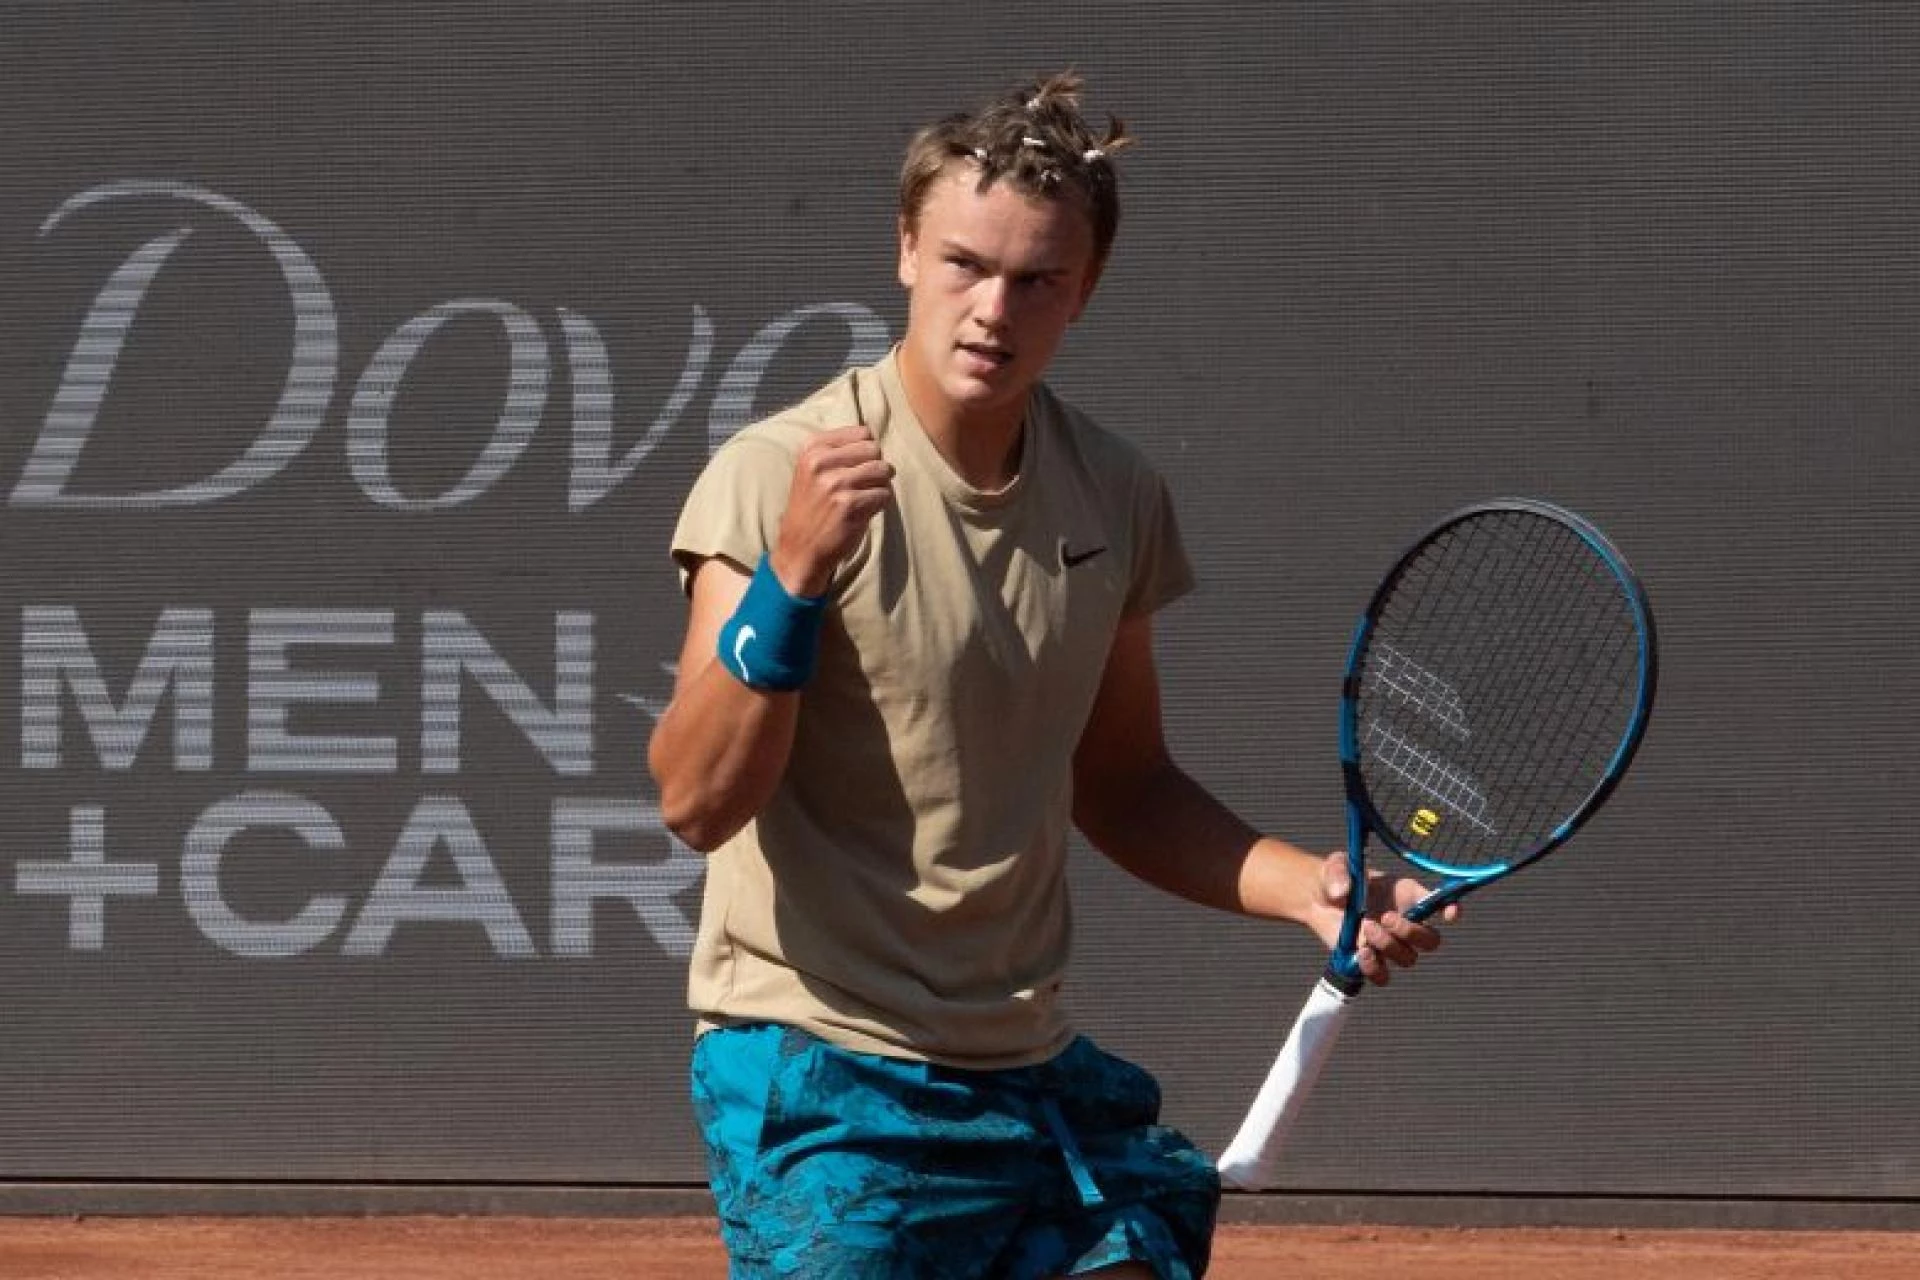 Альберт Рамос - Хольгер Руне. Прогноз на матч ATP Барселона (20 апреля 2021 года)